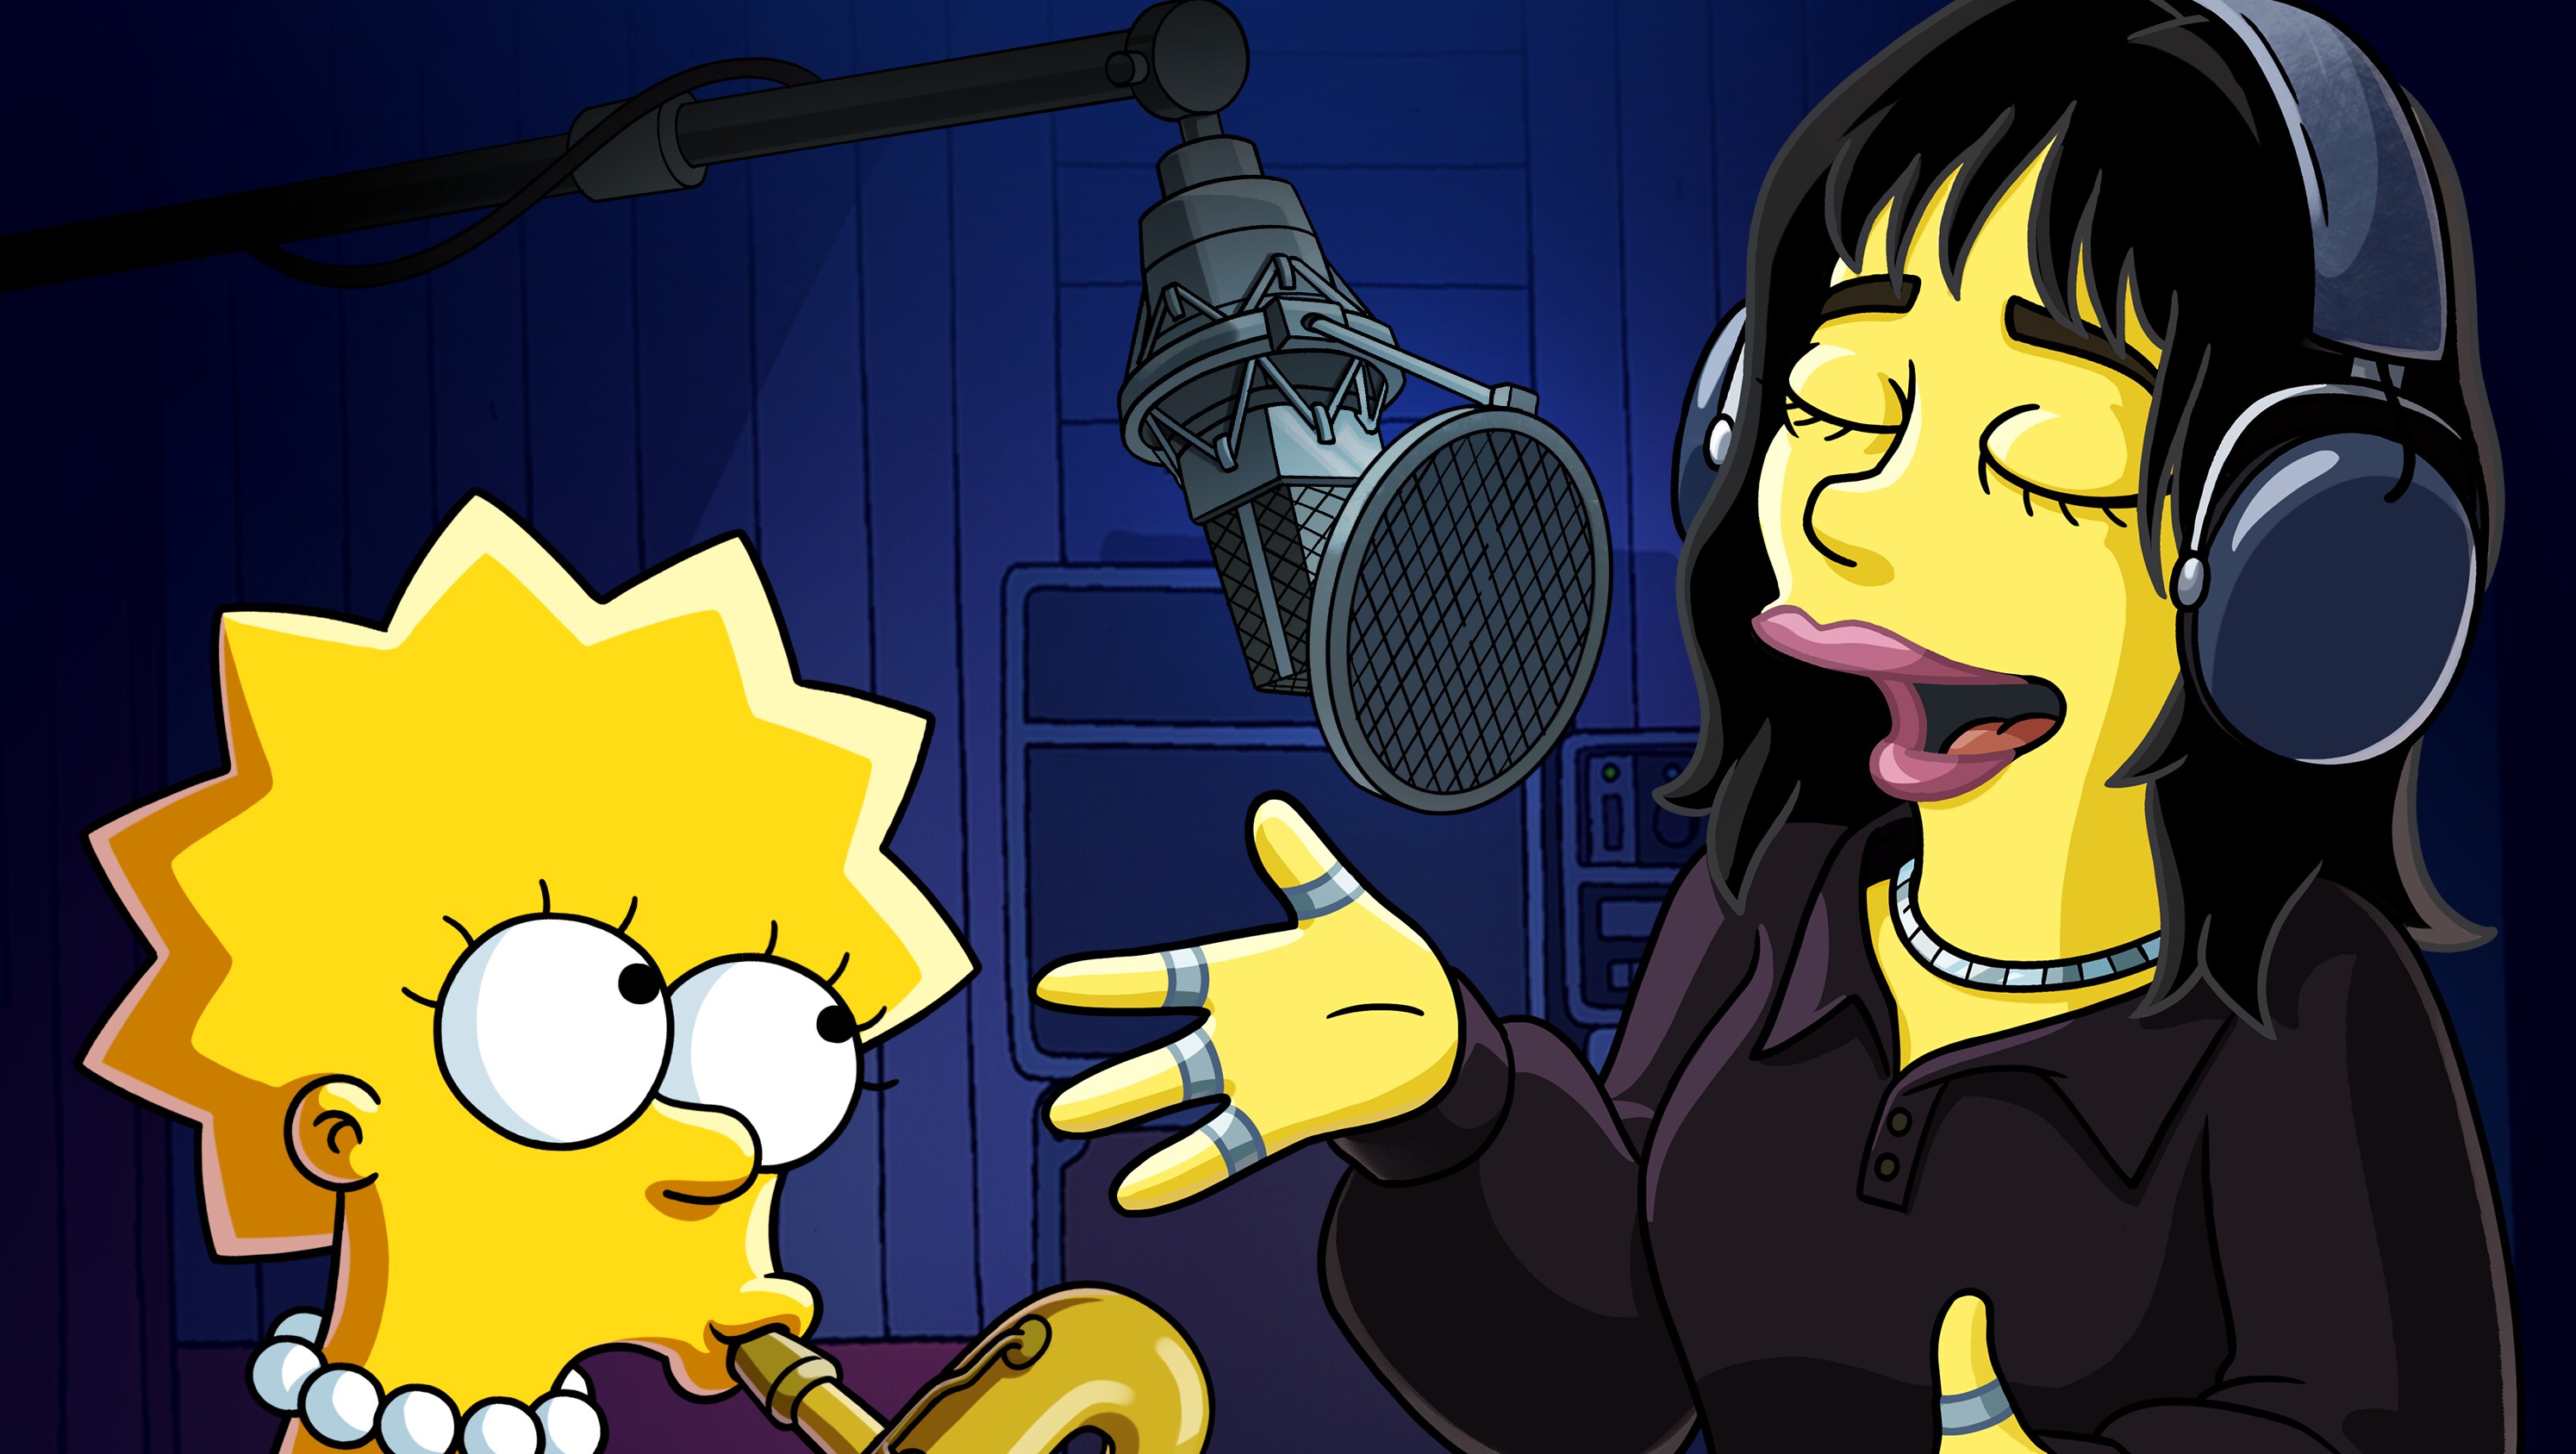 The Simpsons: When Billie Met Lisa Key Art